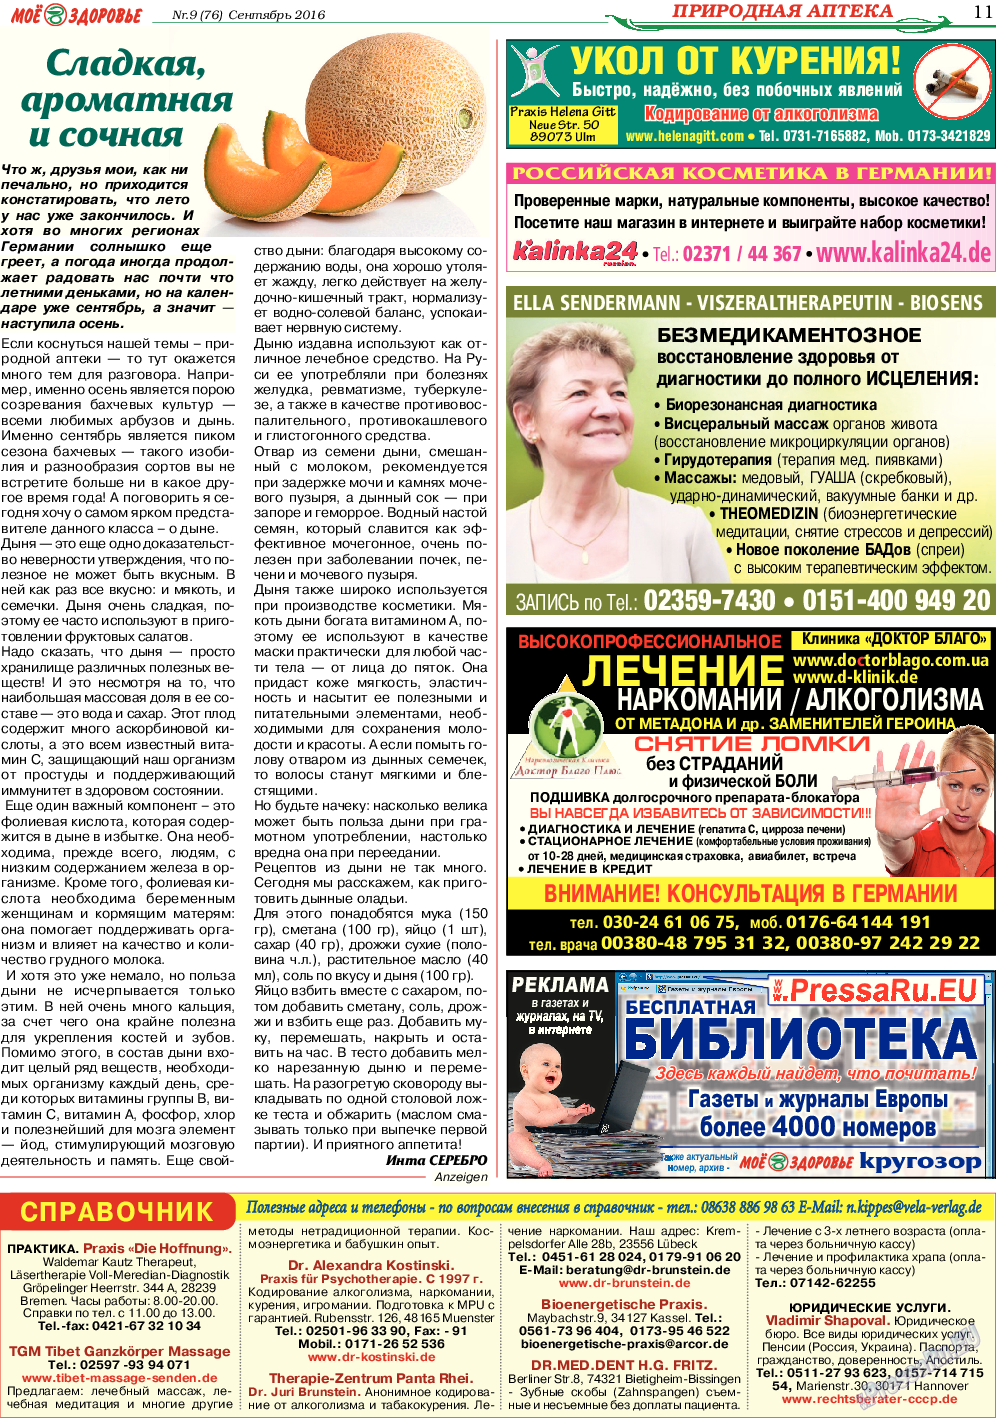 Кругозор (газета). 2016 год, номер 9, стр. 11